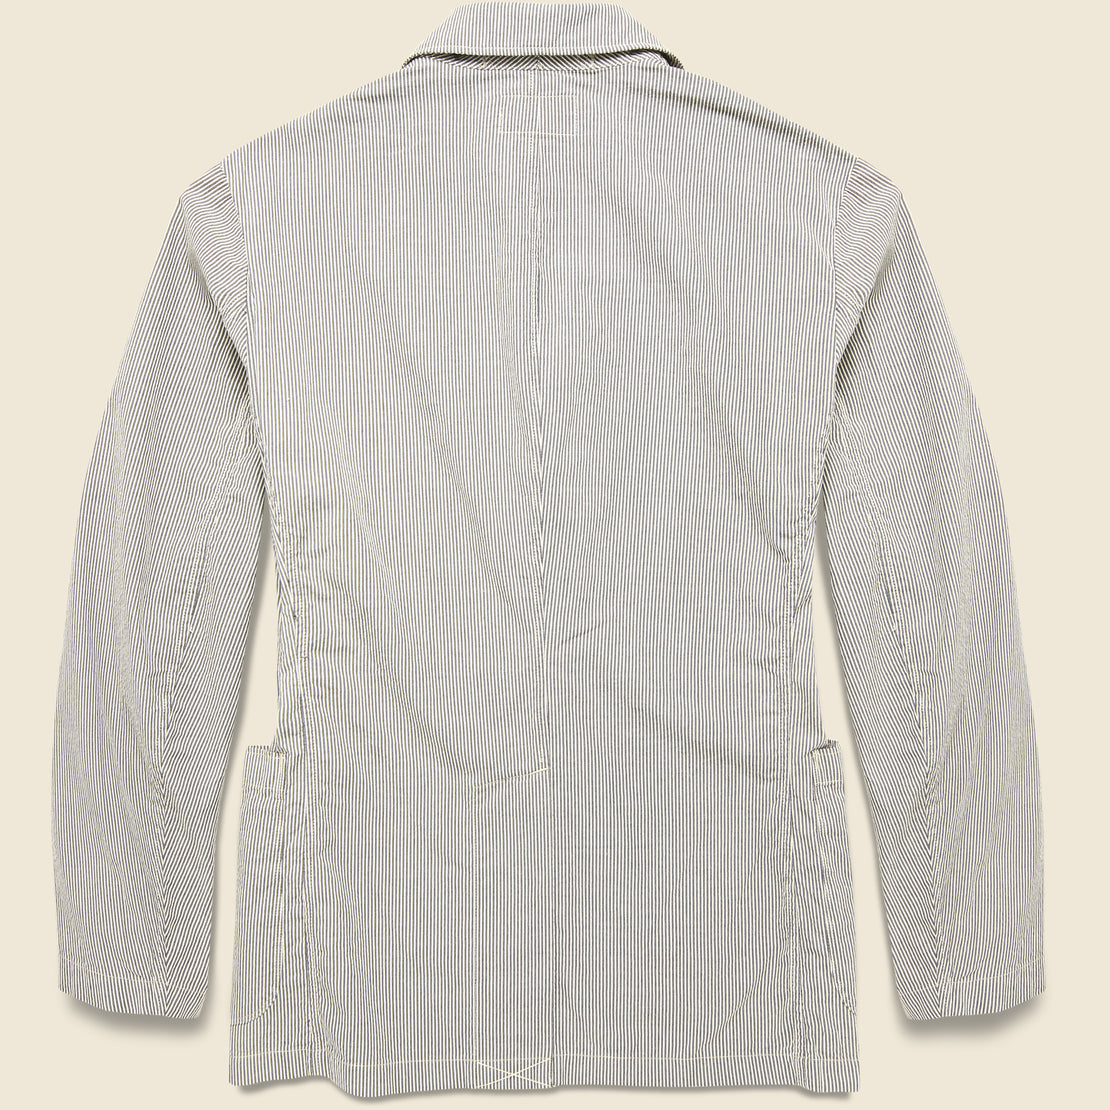 Wadebridge Seersucker Sport Coat - Cream/Grey - RRL - STAG Provisions - Suiting - Sport Coat